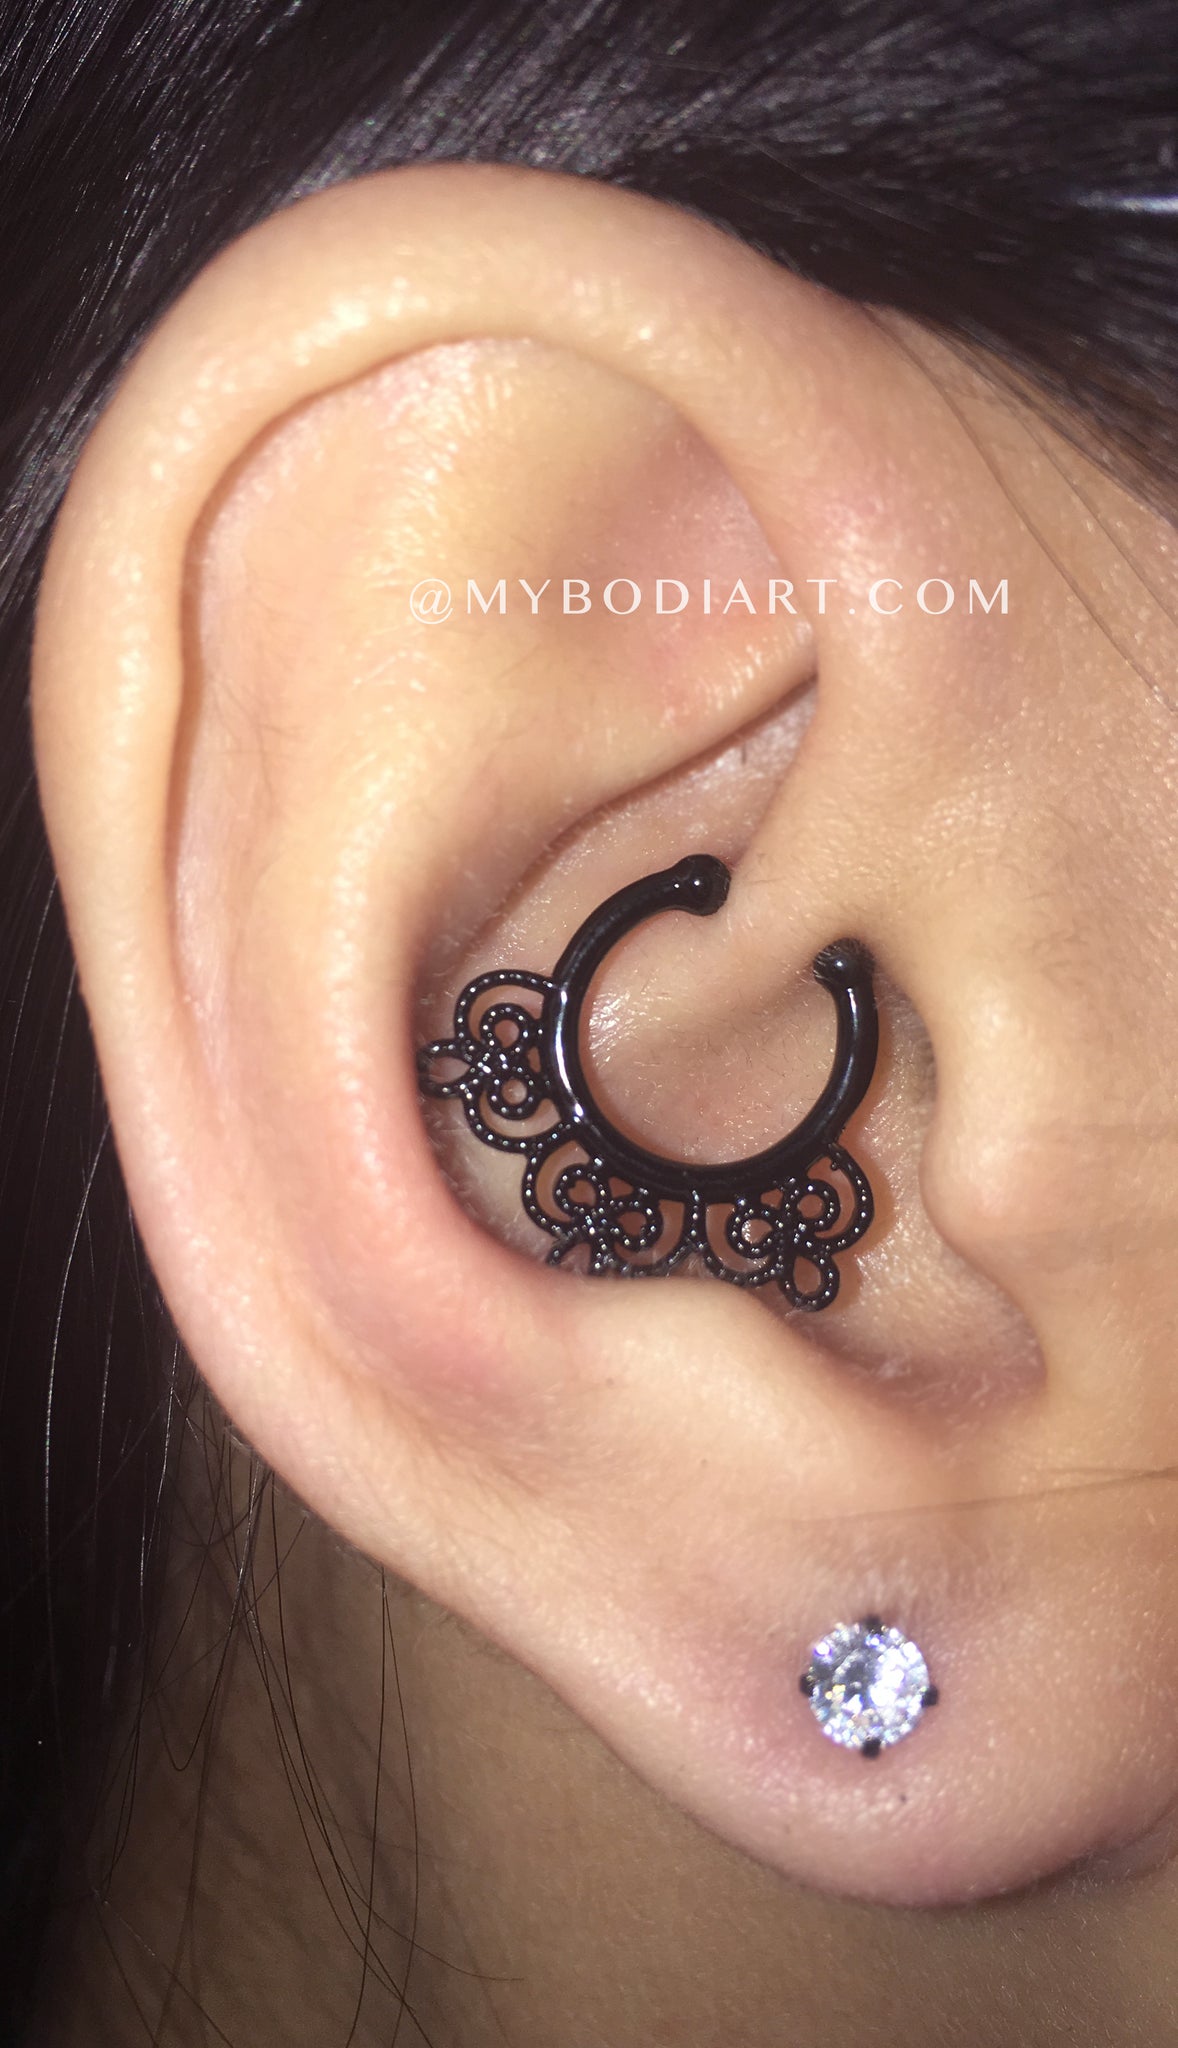 Minimal Ear Piercing ideas for Girls - Badass ideas para perforar orejas - www.MyBodiArt.com